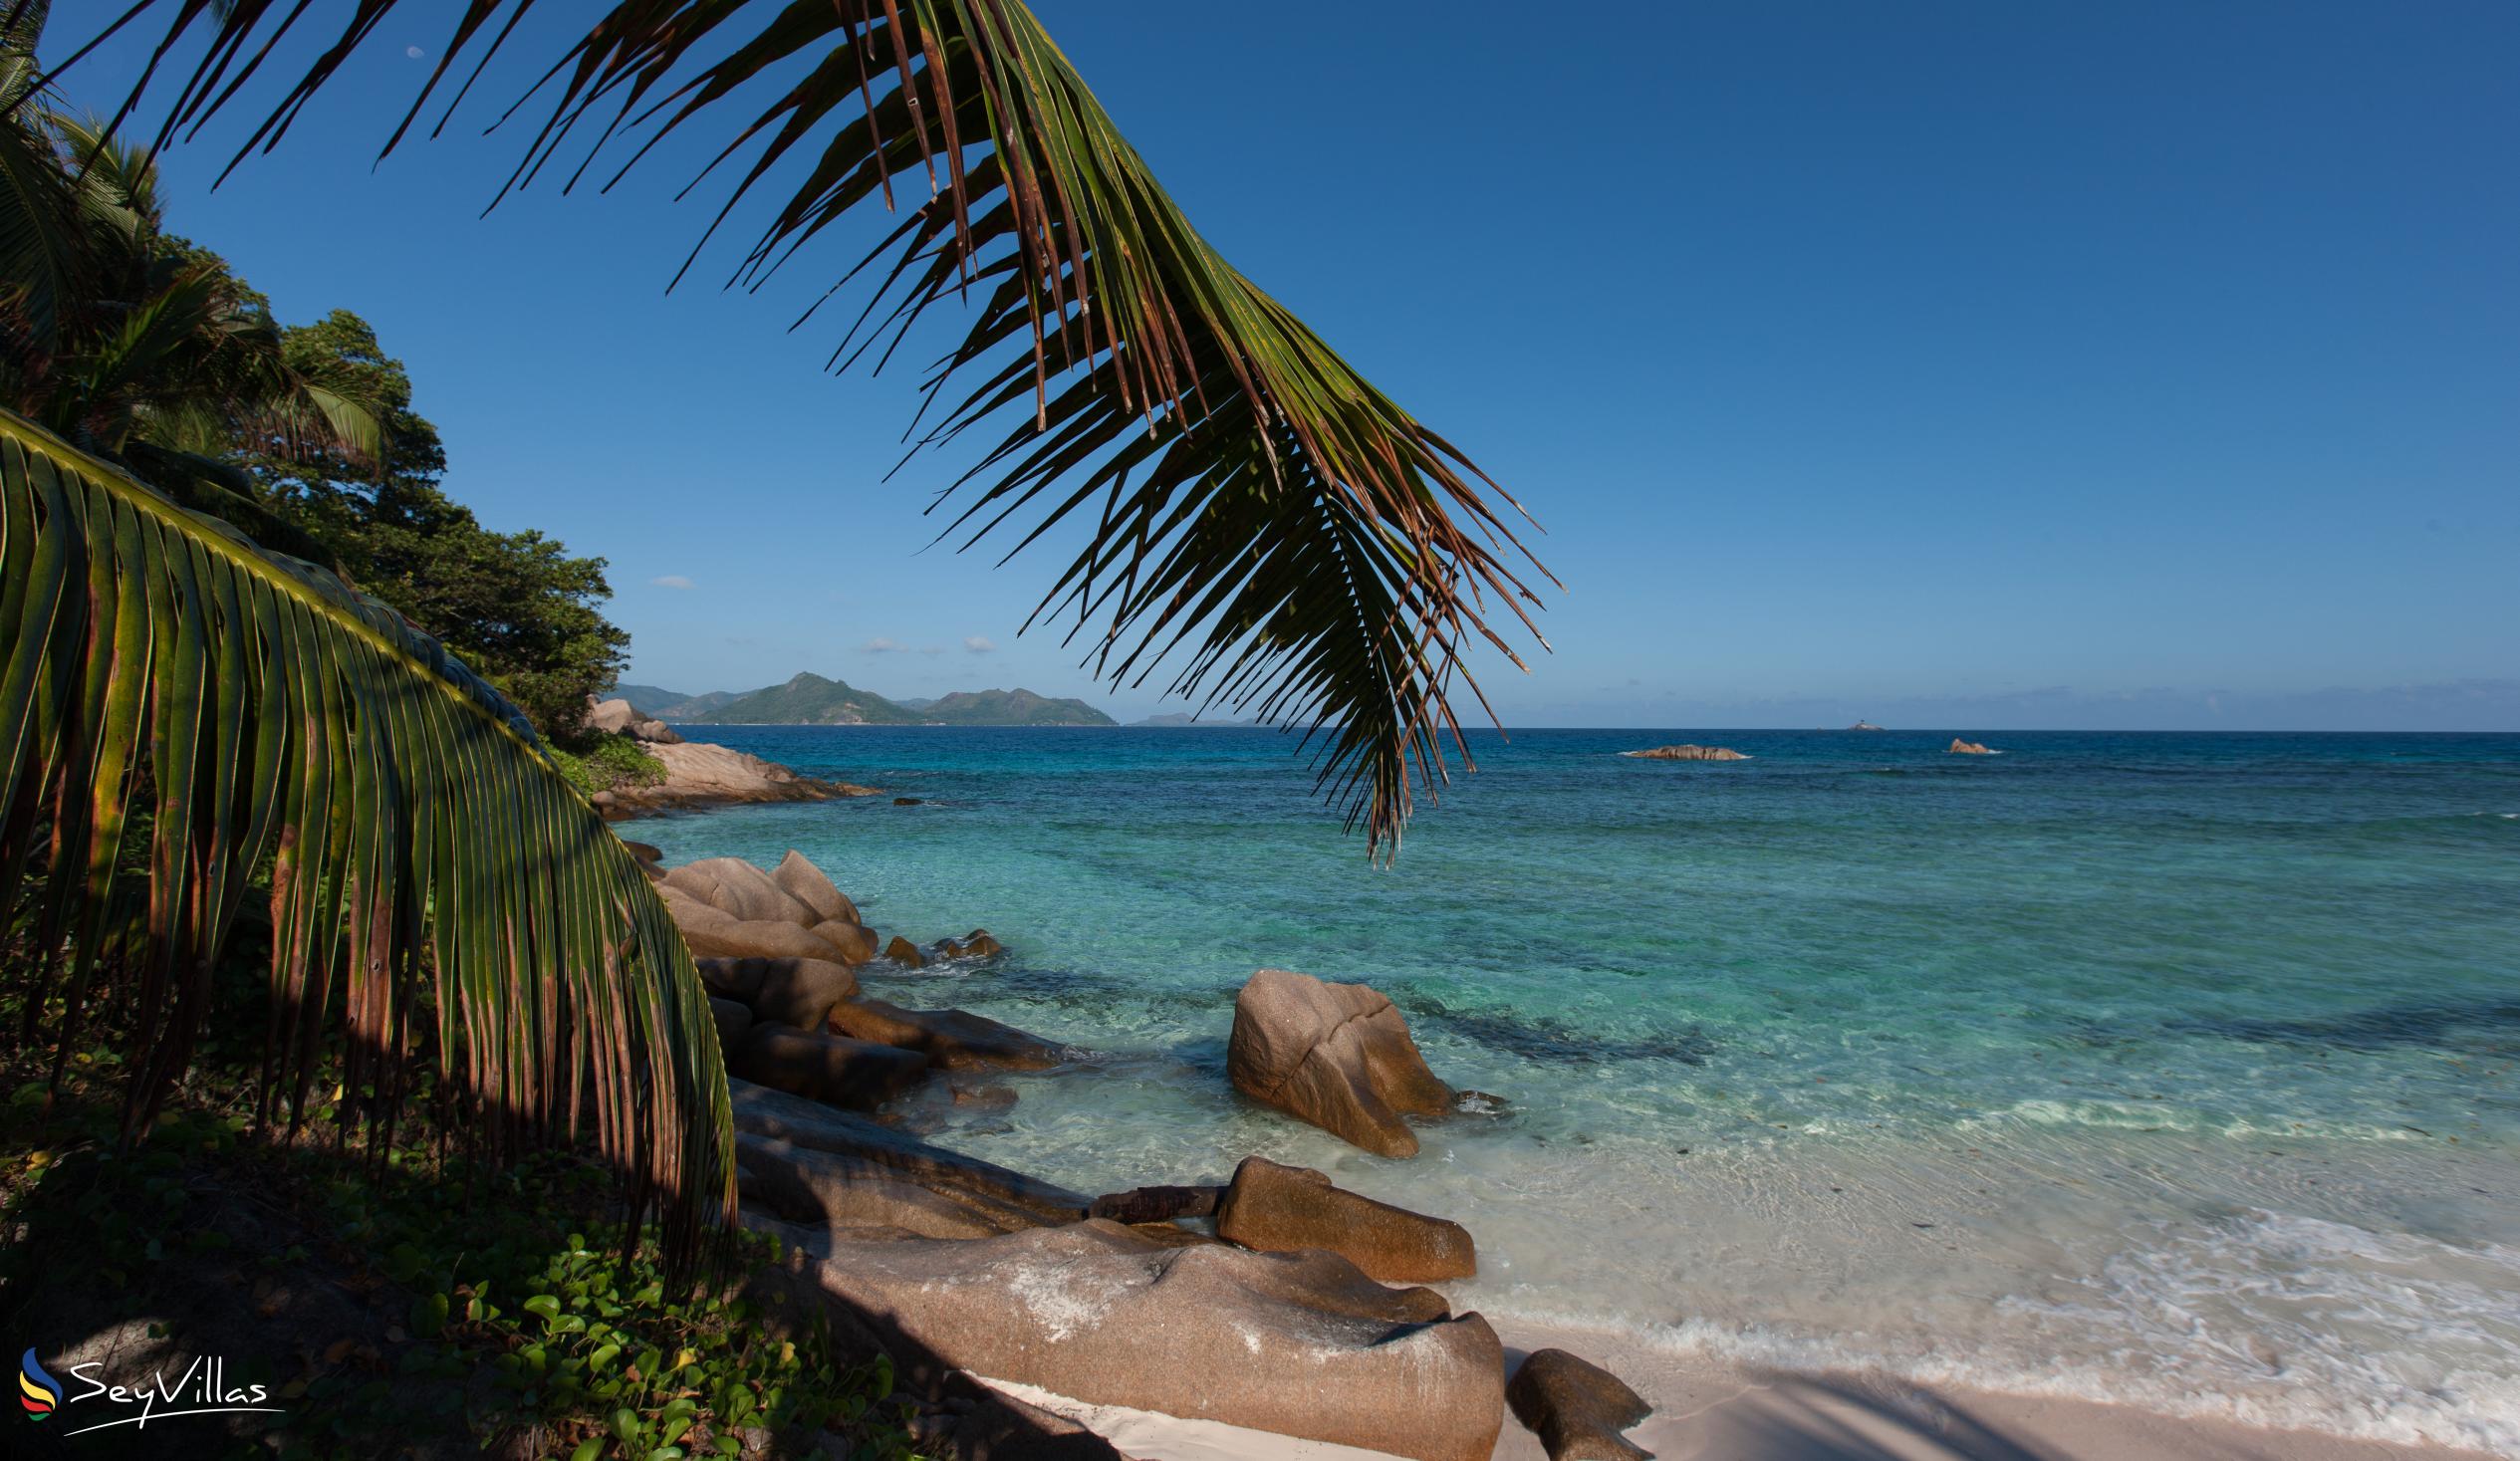 Photo 42: O'Soleil Chalets - Beaches - La Digue (Seychelles)